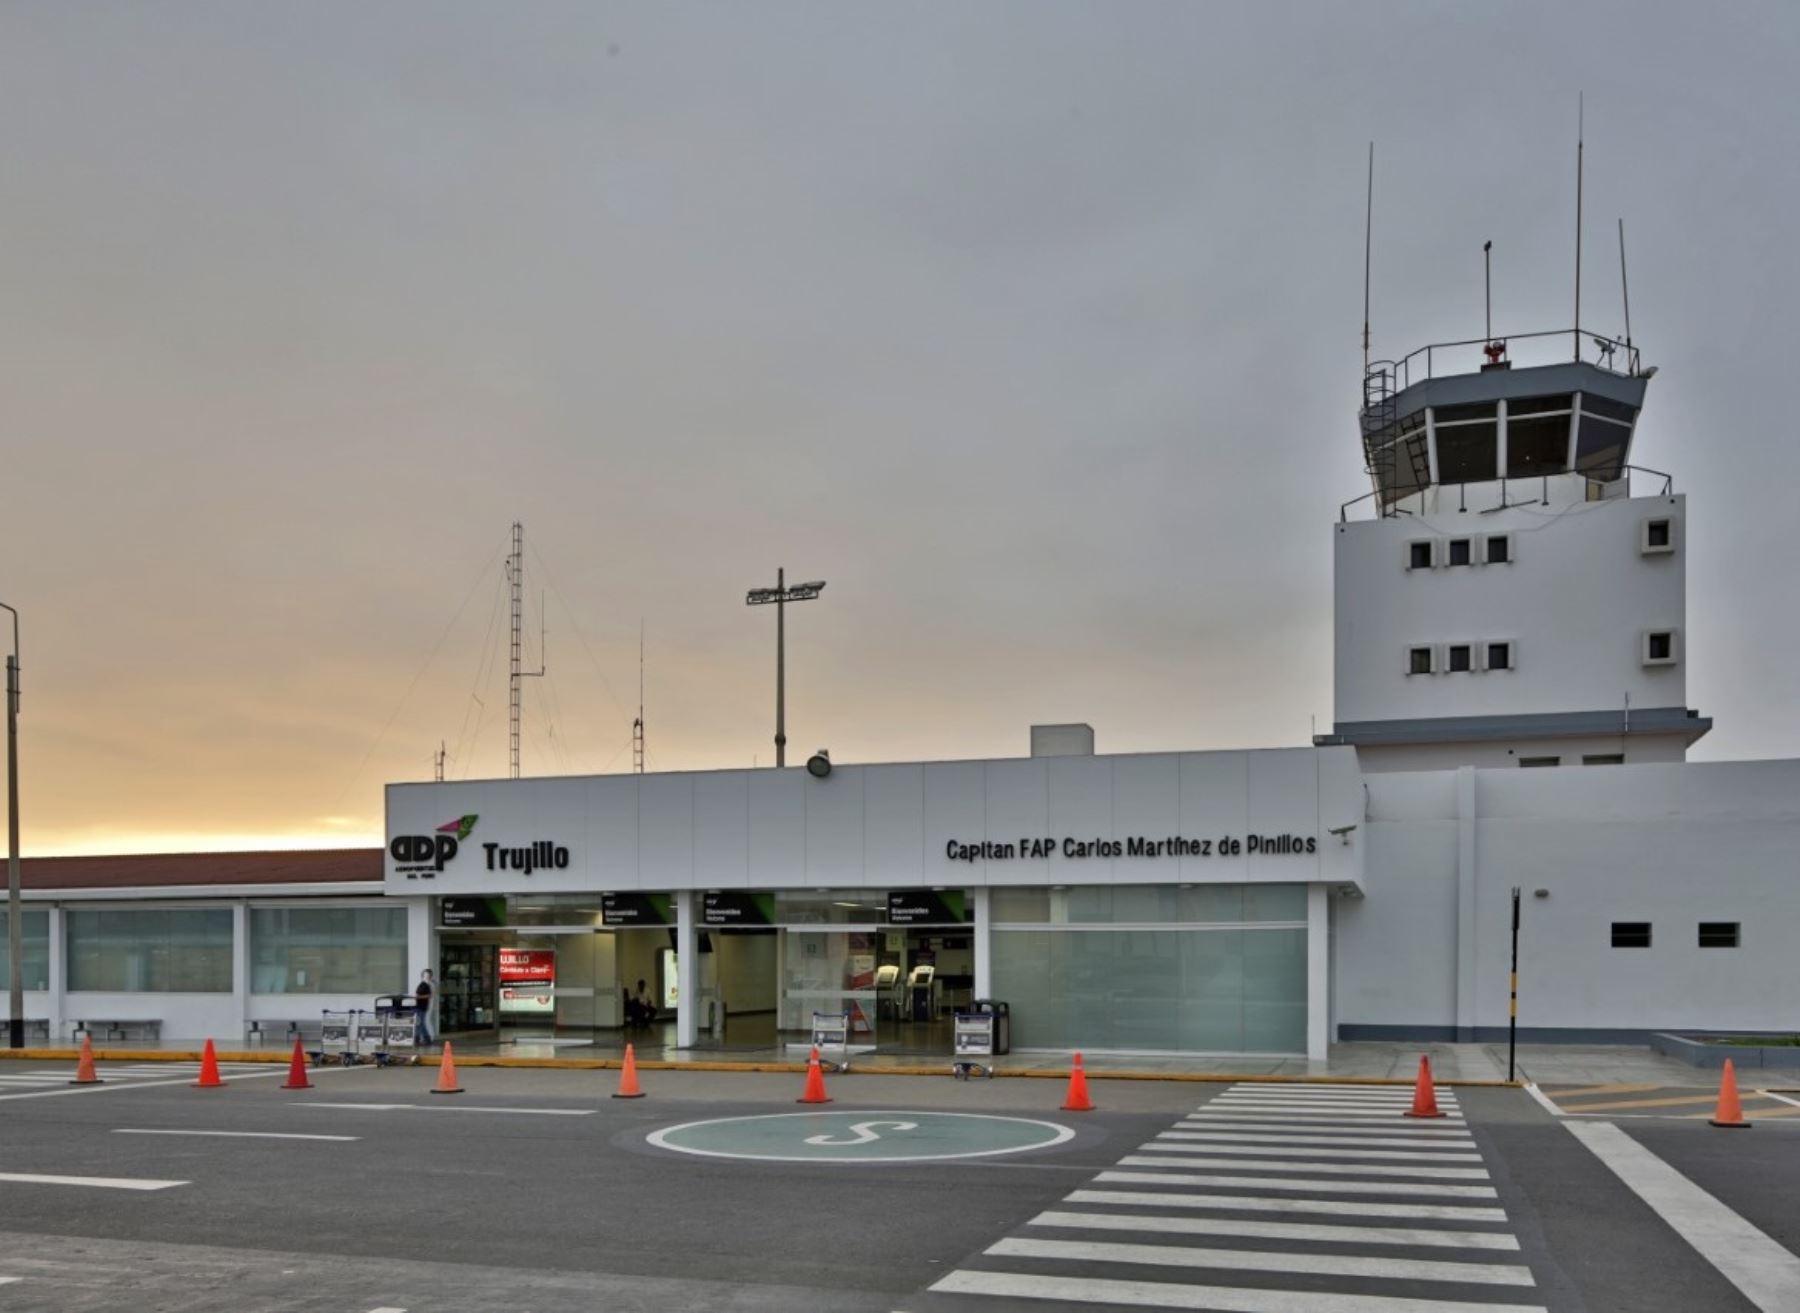 El incidente aéreo ocurrió a pocas millas del aeropuerto de Trujillo, región La Libertad. Foto: ANDINA/Difusión